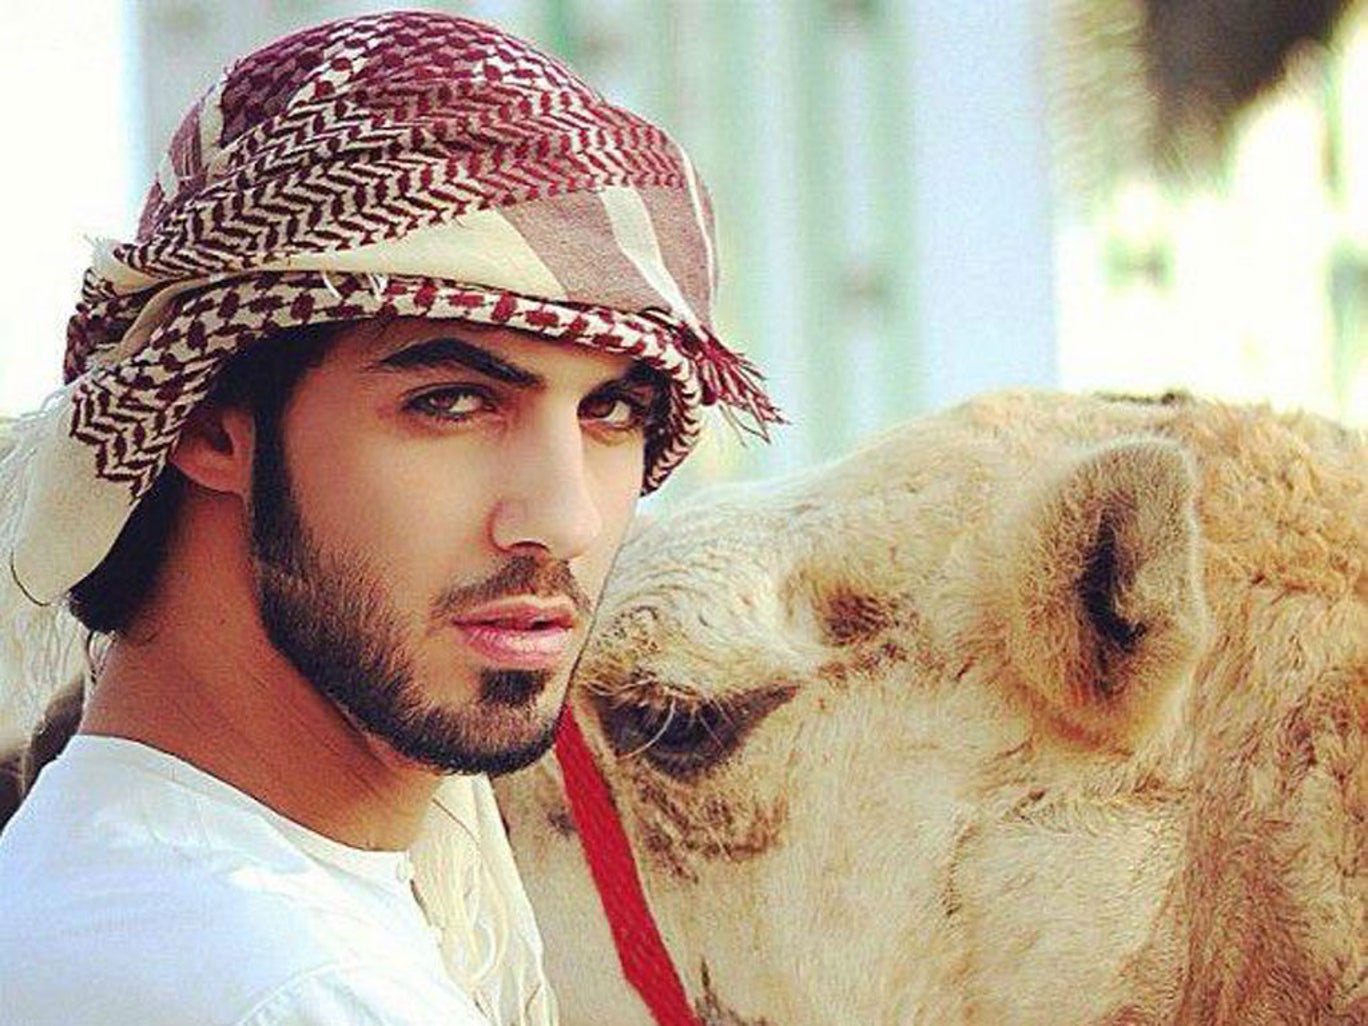 آیا عمر برکان الغلا ، شاعر، بازیگر، مدل و چهره سرشناس رسانه های اجتماعی یکی از آن جمله مردانی است که برای ماندن در عربستان سعودی بیش از حد جذاب و زیبا بود؟